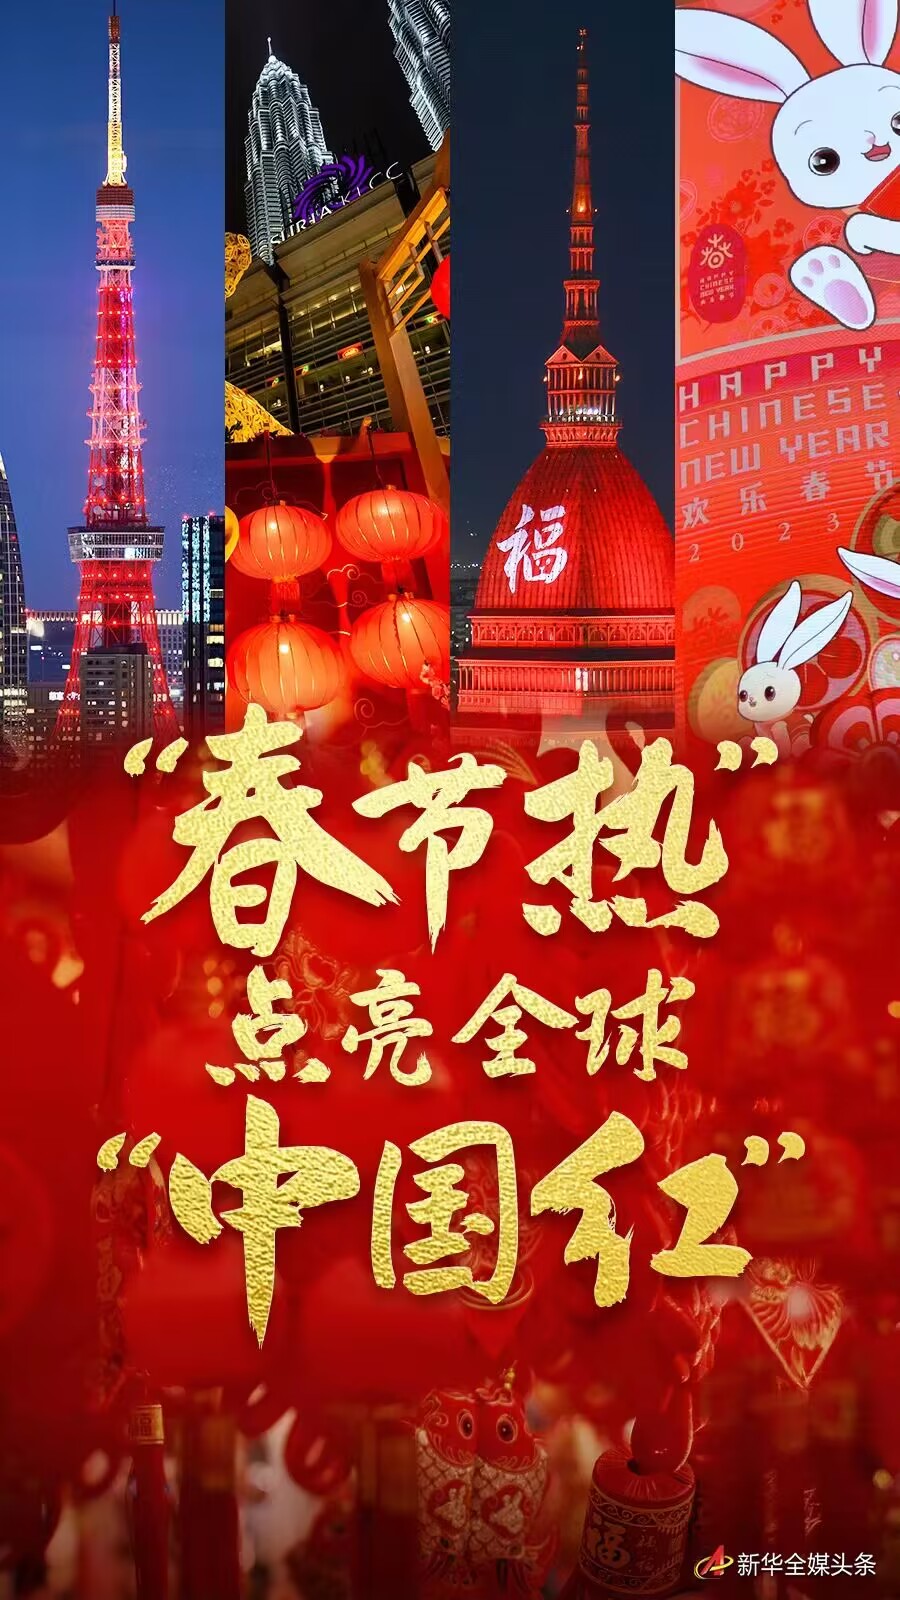 春节热”点亮全球“中国红”-新华网 image